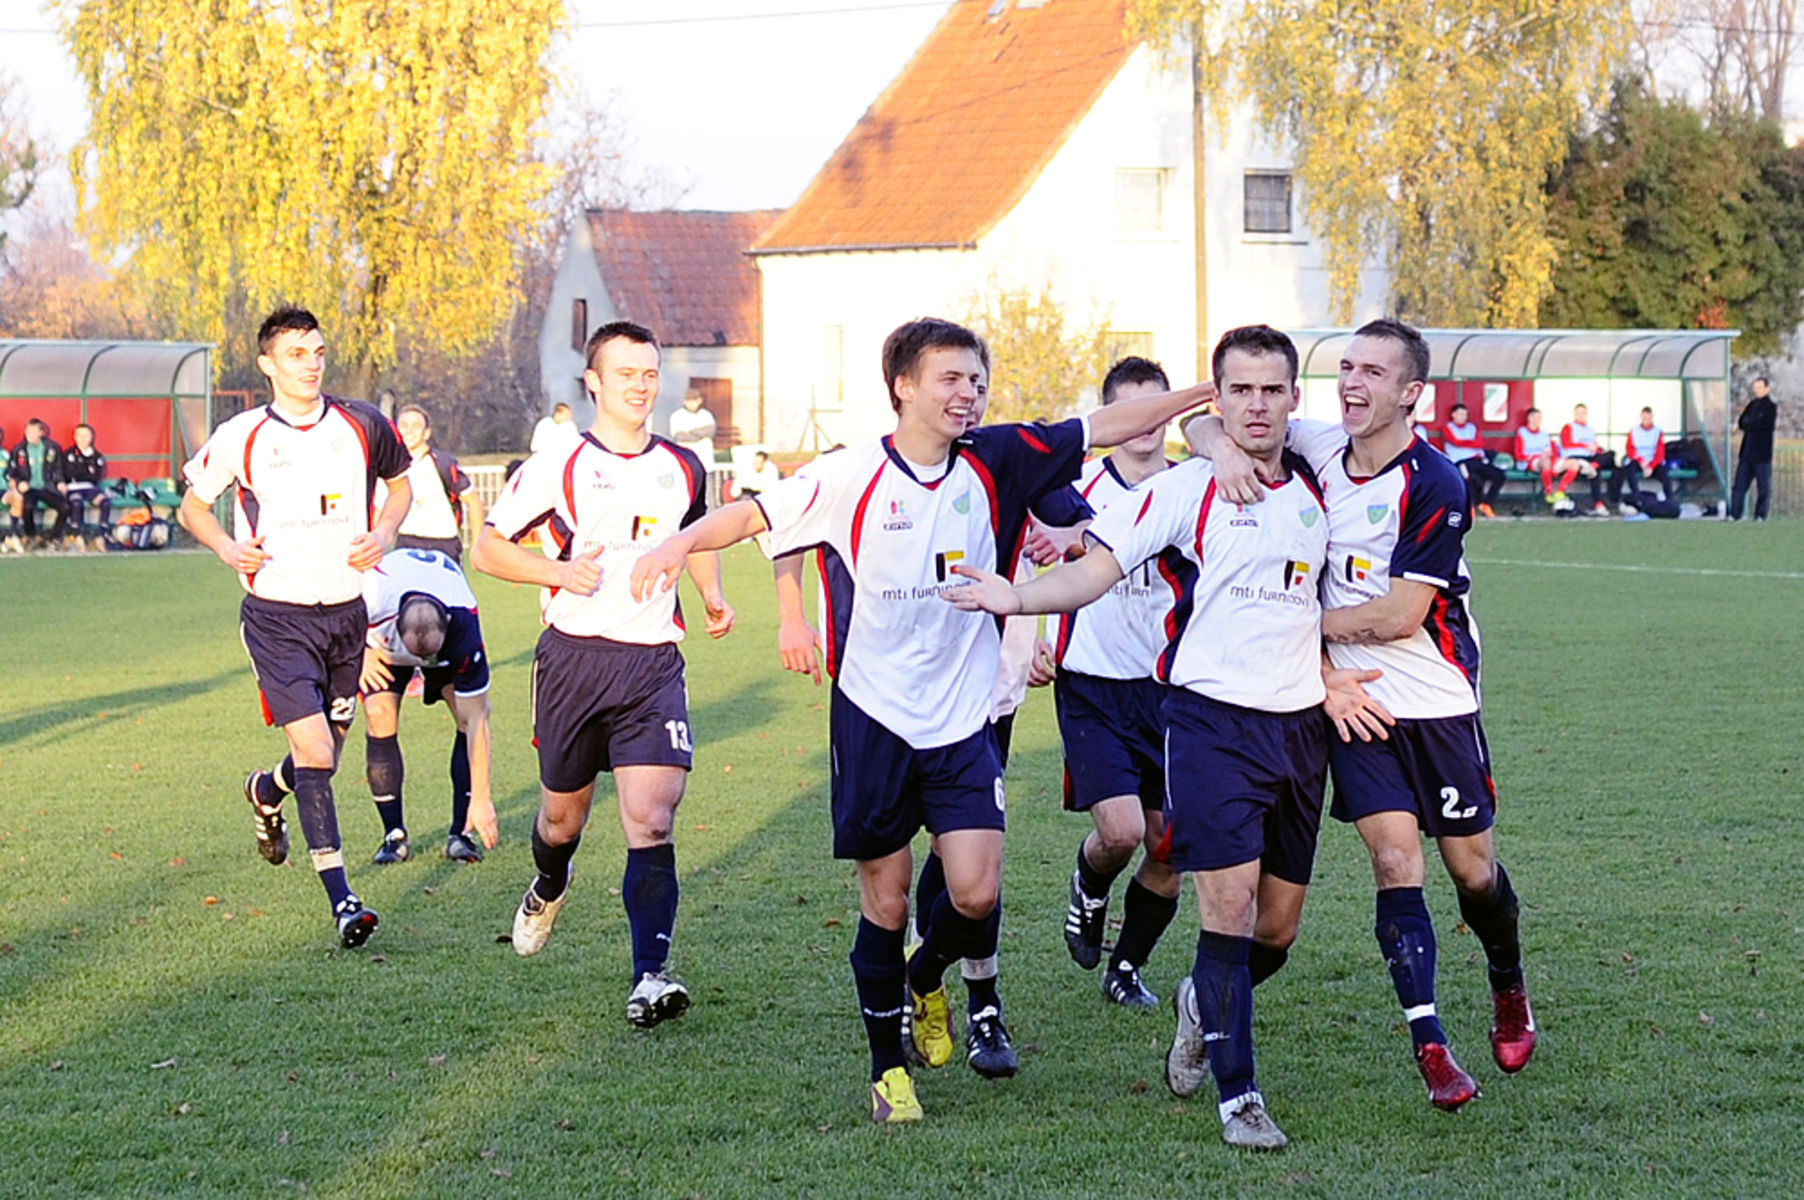 W poprzednim sezonie Granica Kętrzyn wbiła drużynie z Korsz pięć bramek. Wszystkie zdobył właśnie Kowalewski. Fot.Damian Lemański